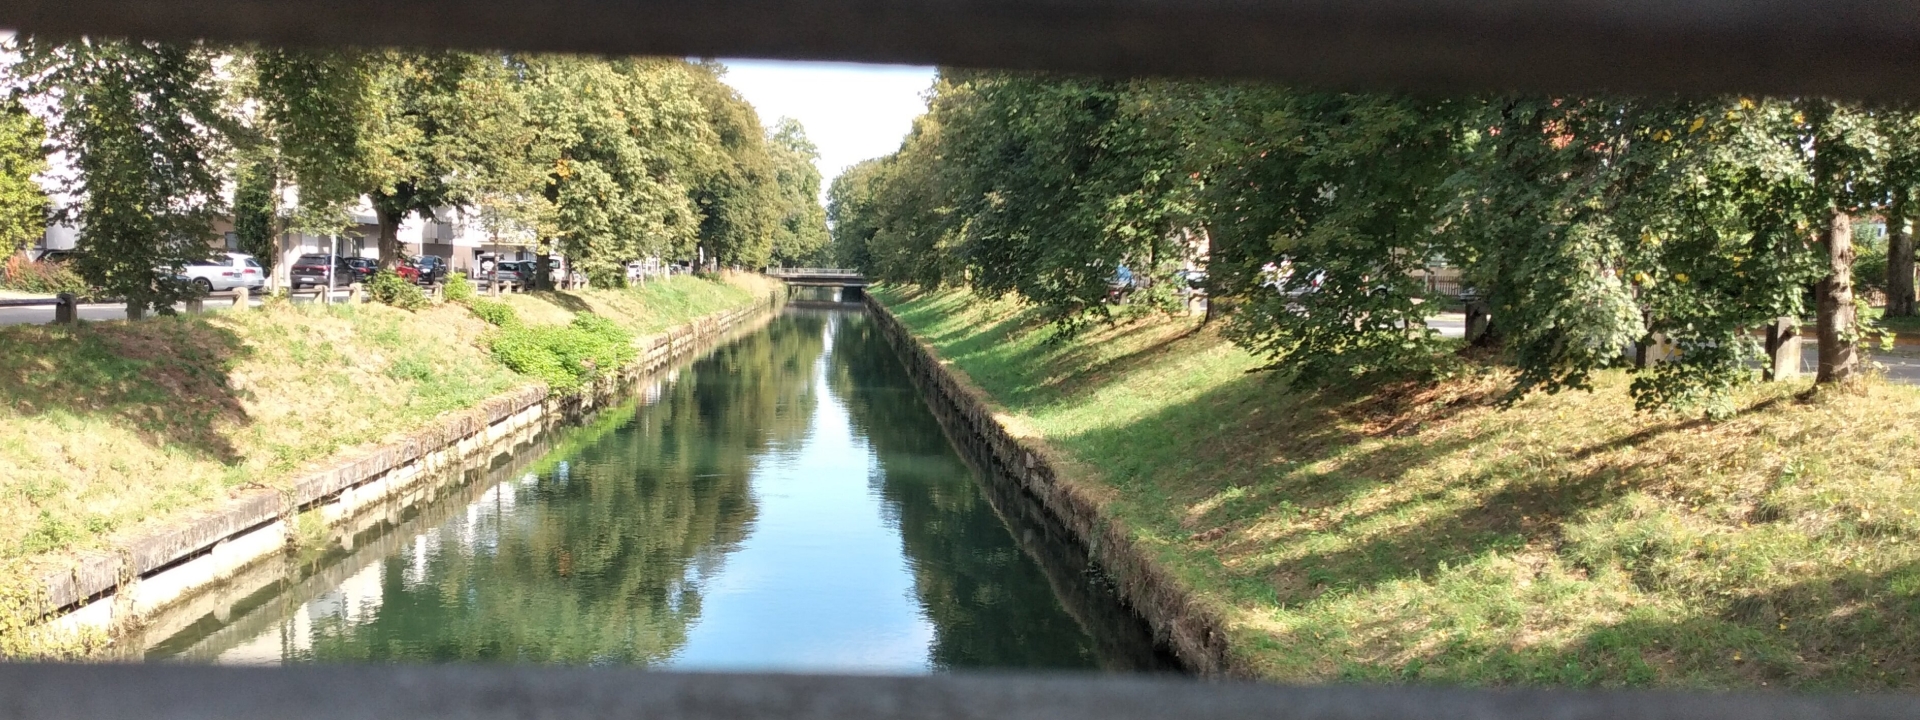 Bild des Mangfallkanals von einer Brücke herunter. Fotografiert zwischen zwei metallenen Gitterstäben hindurch. Man sieht rechts und links eine grüne Böschung, am Rand stehen ein paar Bäume.